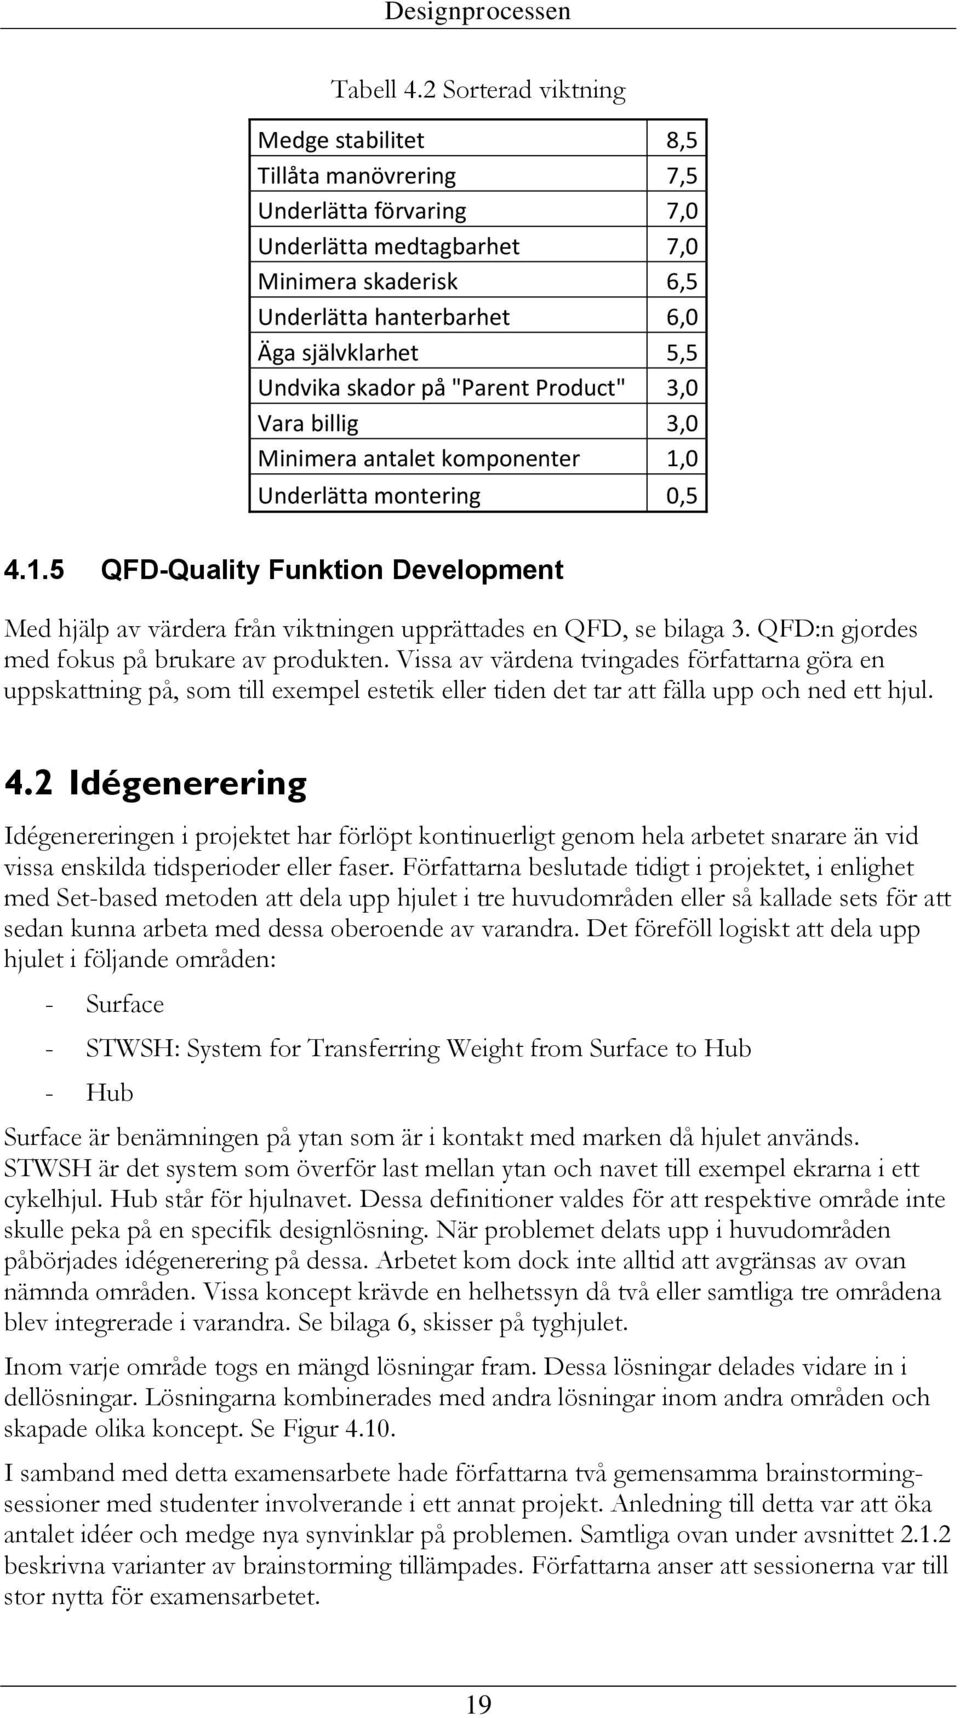 skador på "Parent Product" 3,0 Vara billig 3,0 Minimera antalet komponenter 1,0 Underlätta montering 0,5 4.1.5 QFD-Quality Funktion Development Med hjälp av värdera från viktningen upprättades en QFD, se bilaga 3.